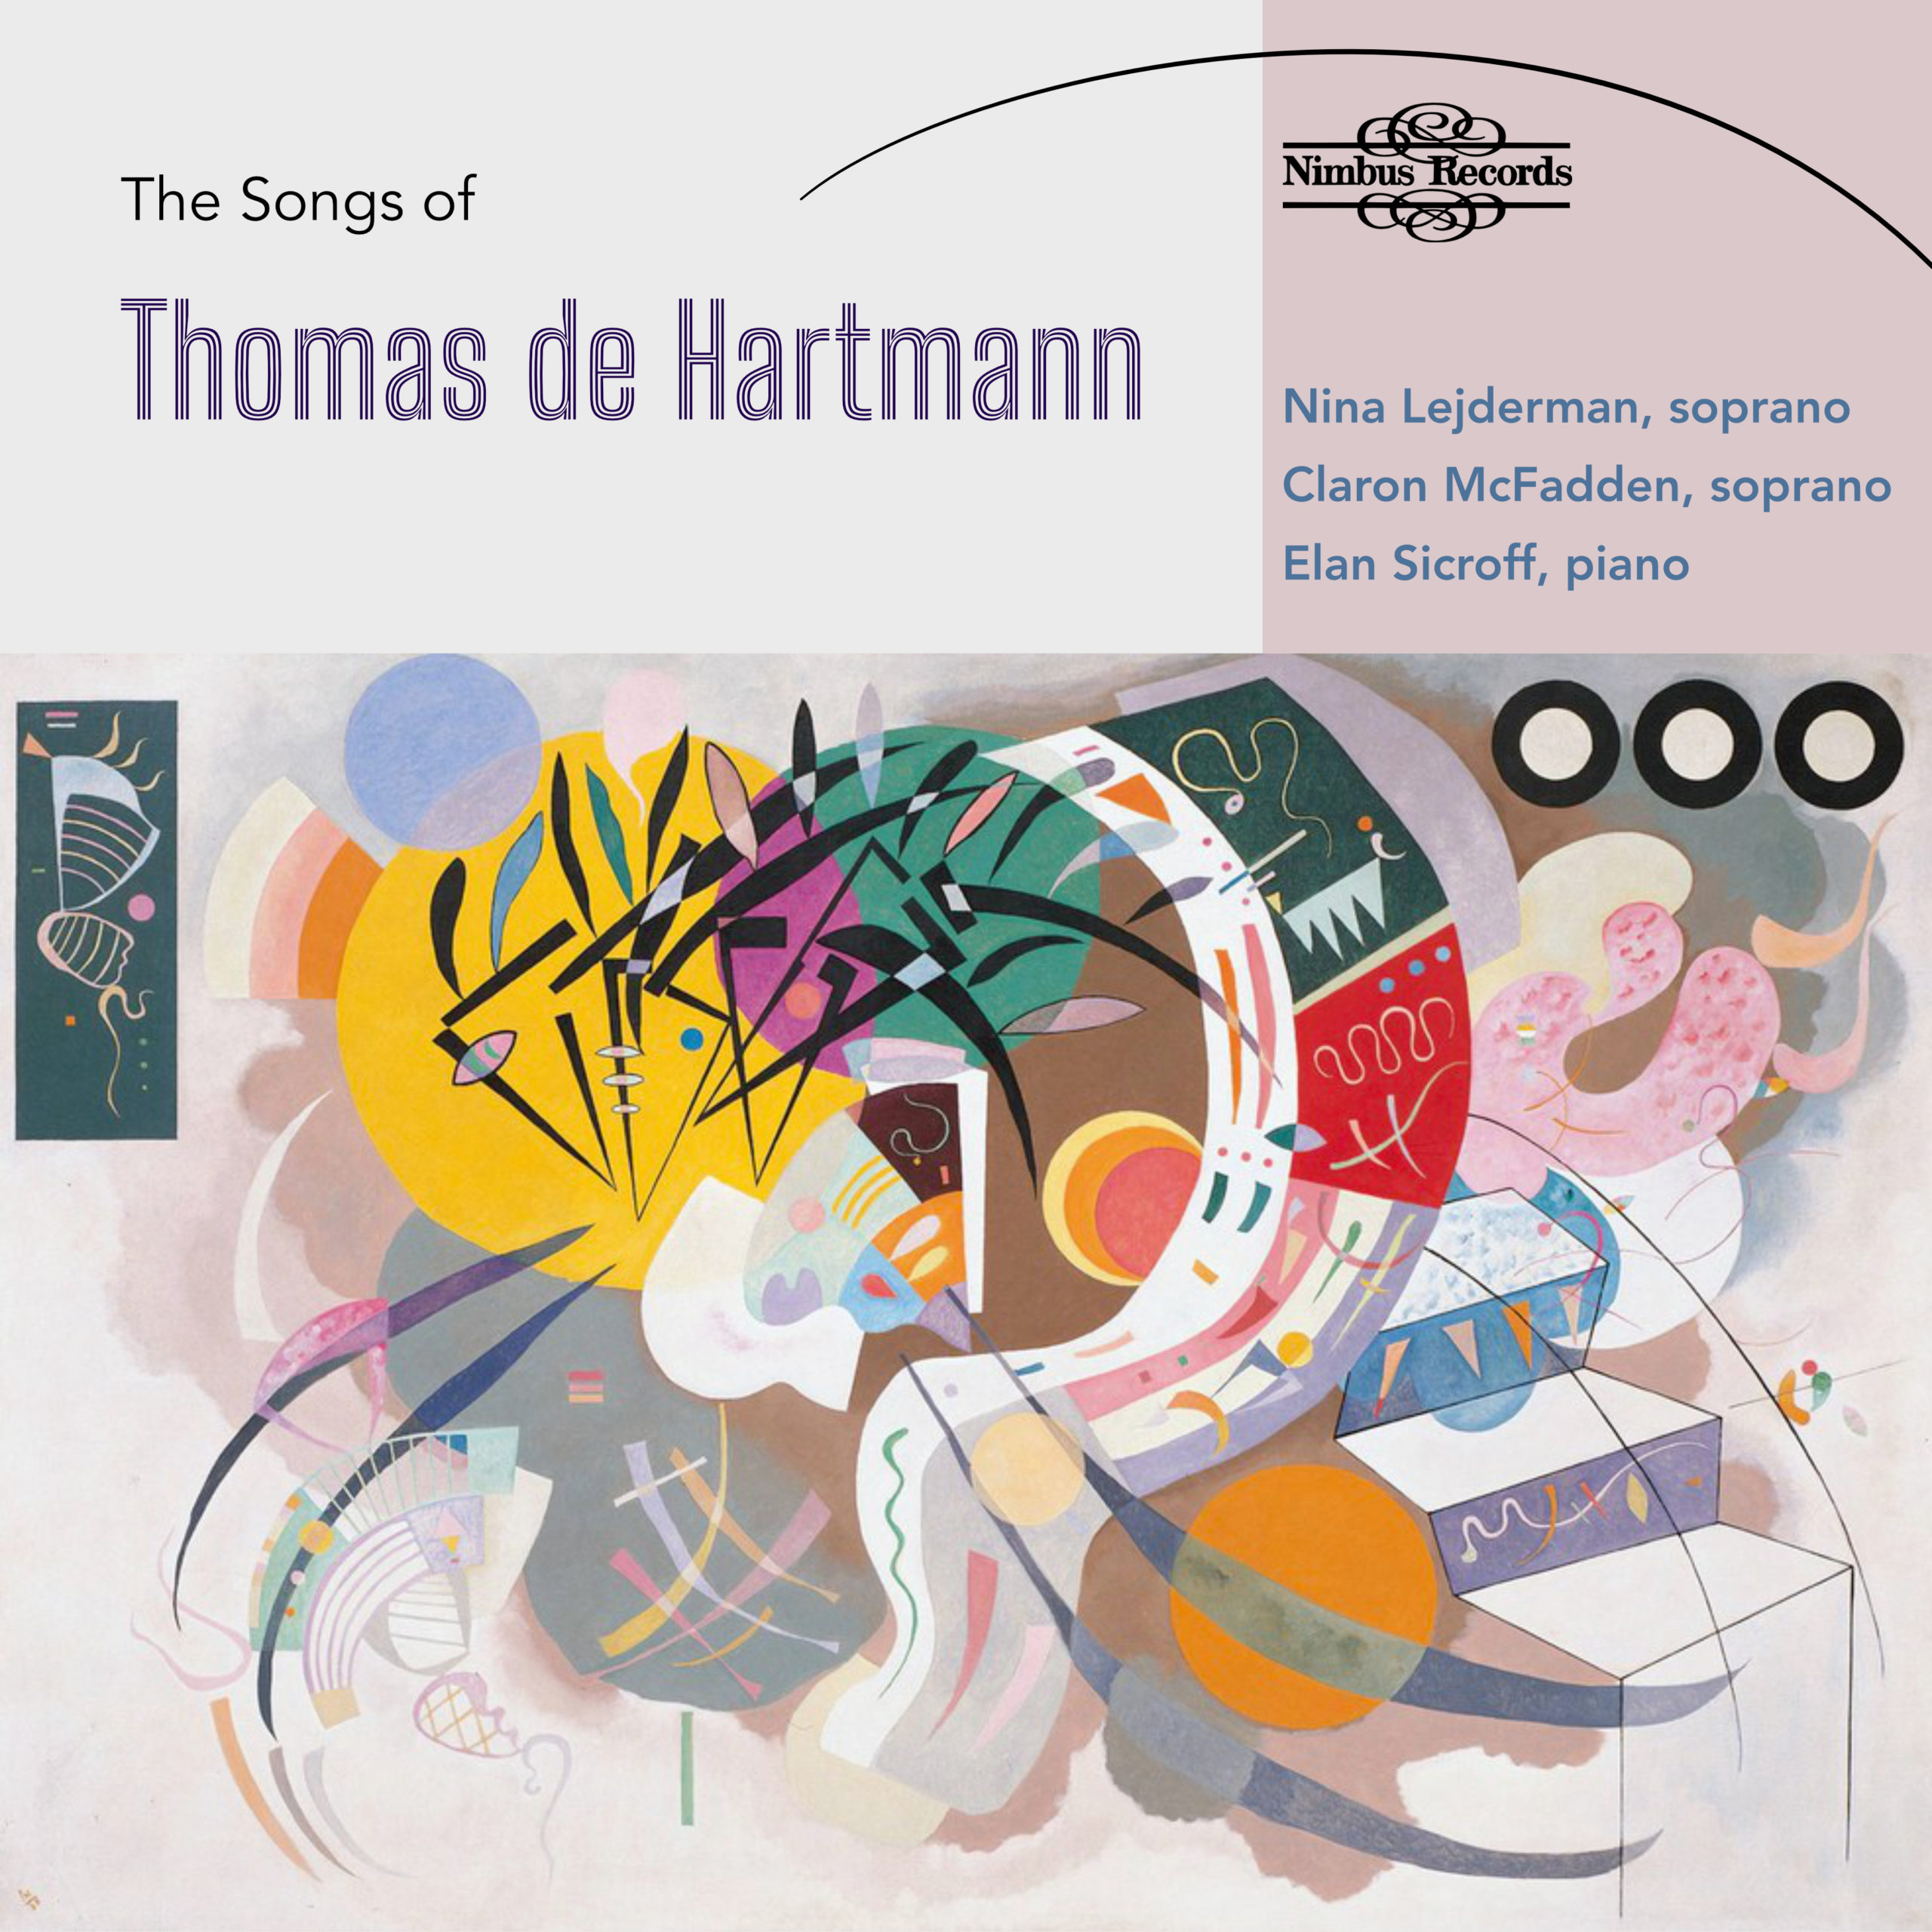 The Songs of Thomas de Hartmann